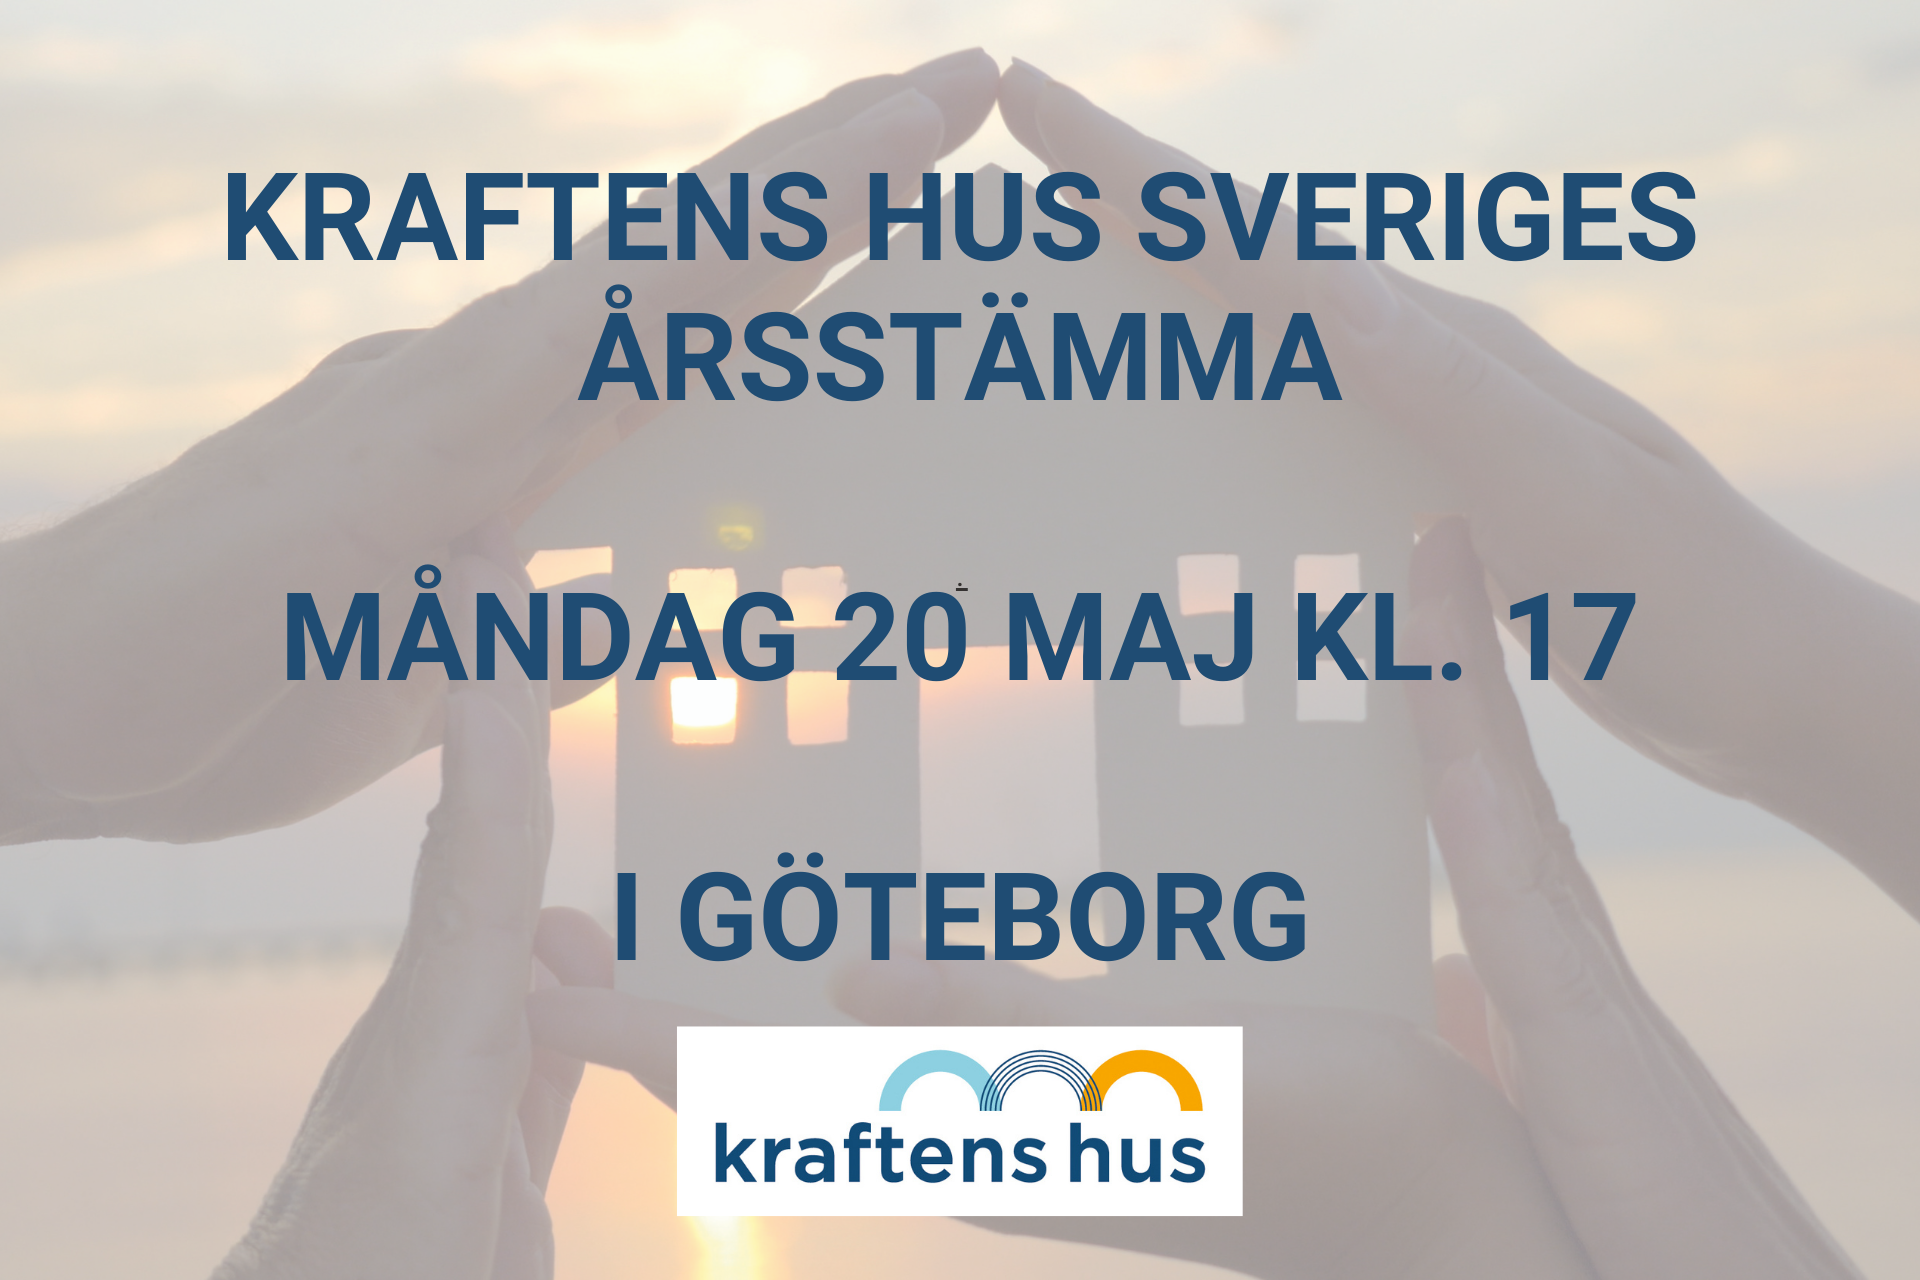 Kraftens hus Sverige har årsstämma måndag 20 maj 2024 kl. 17 i Göteborg